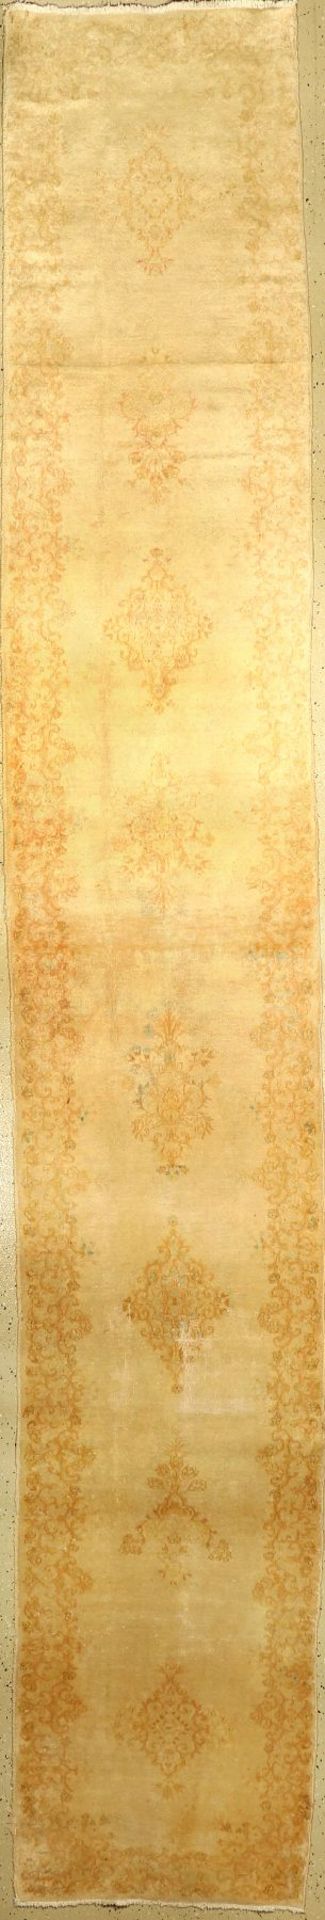 Kerman "Galerie" alt, Persien, ca. 60 Jahre, Wolle auf Baumwolle, ca. 497 x 79 cm, seltenes